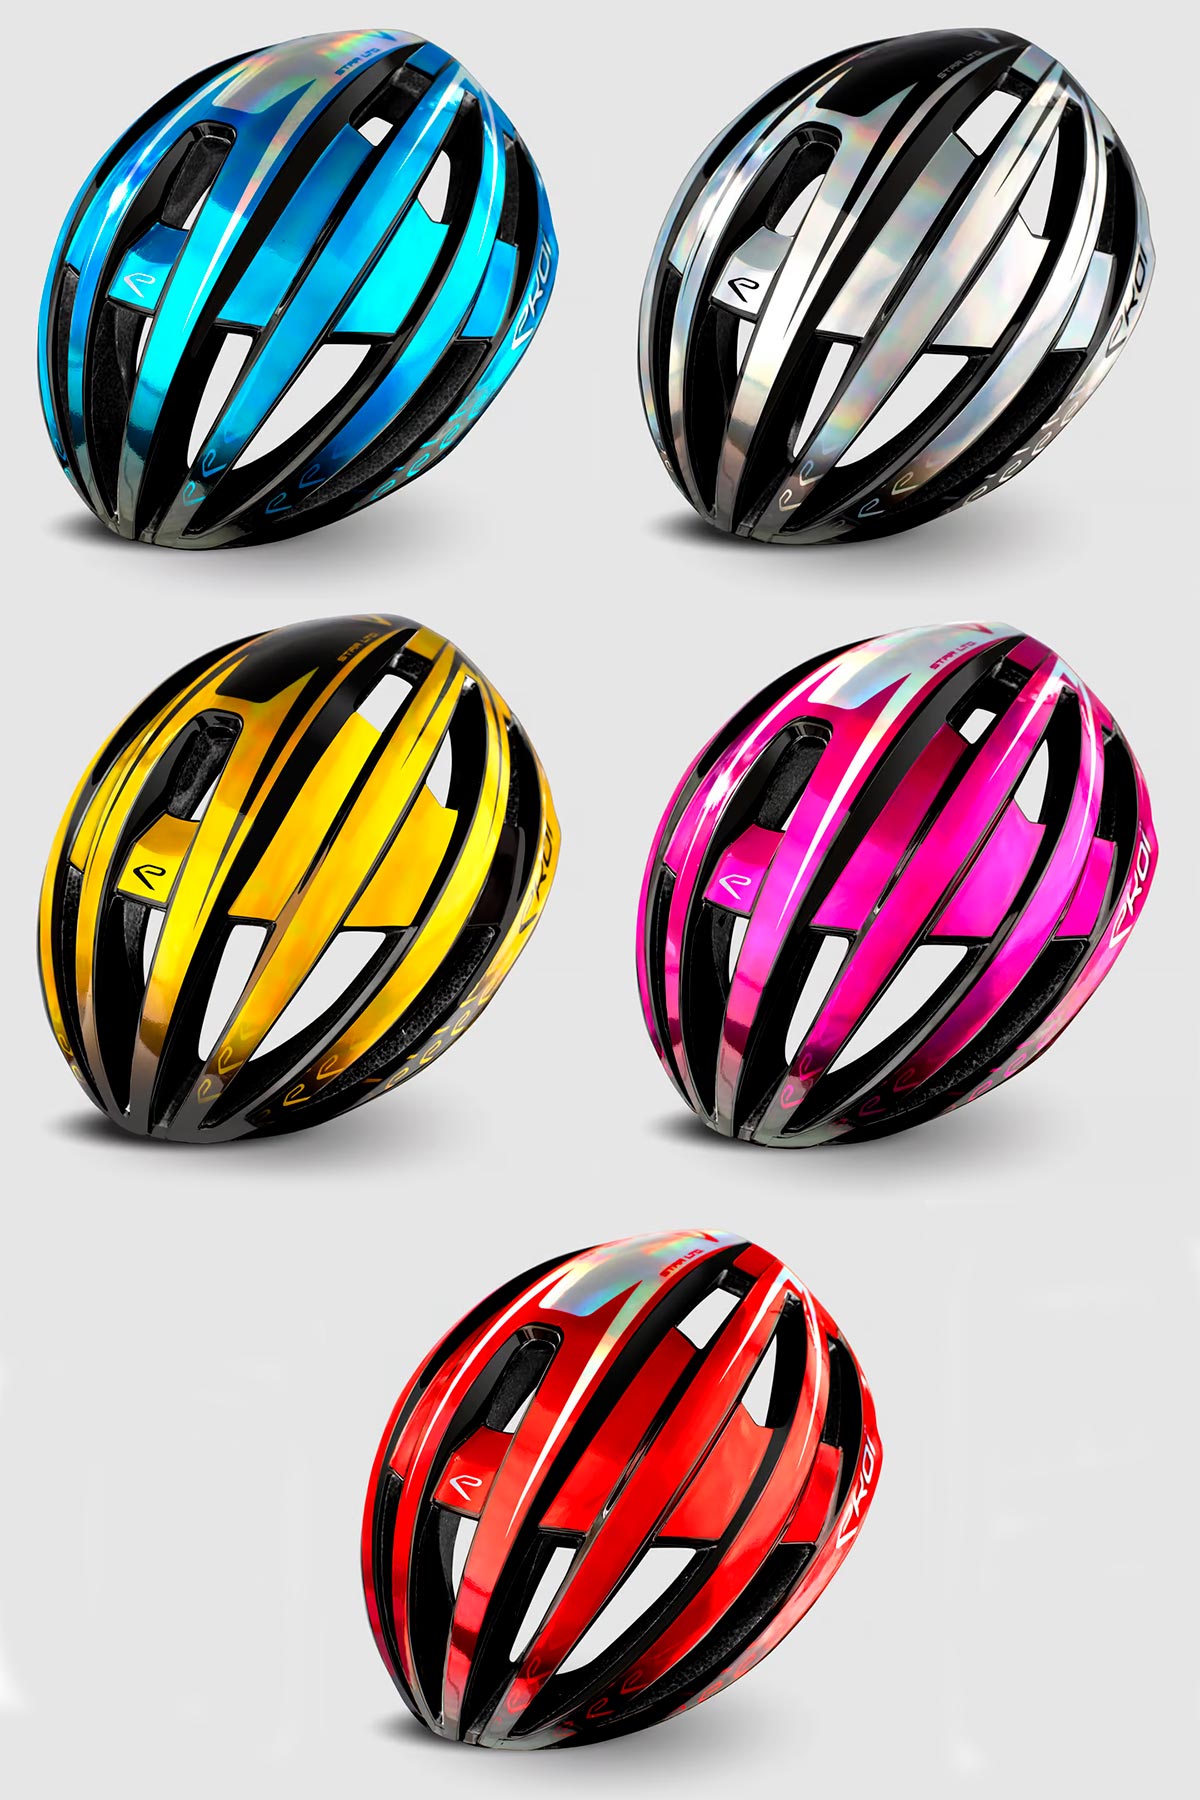 El casco Ekoï Gara MIPS estrena una llamativa edición limitada con cinco colores cromados